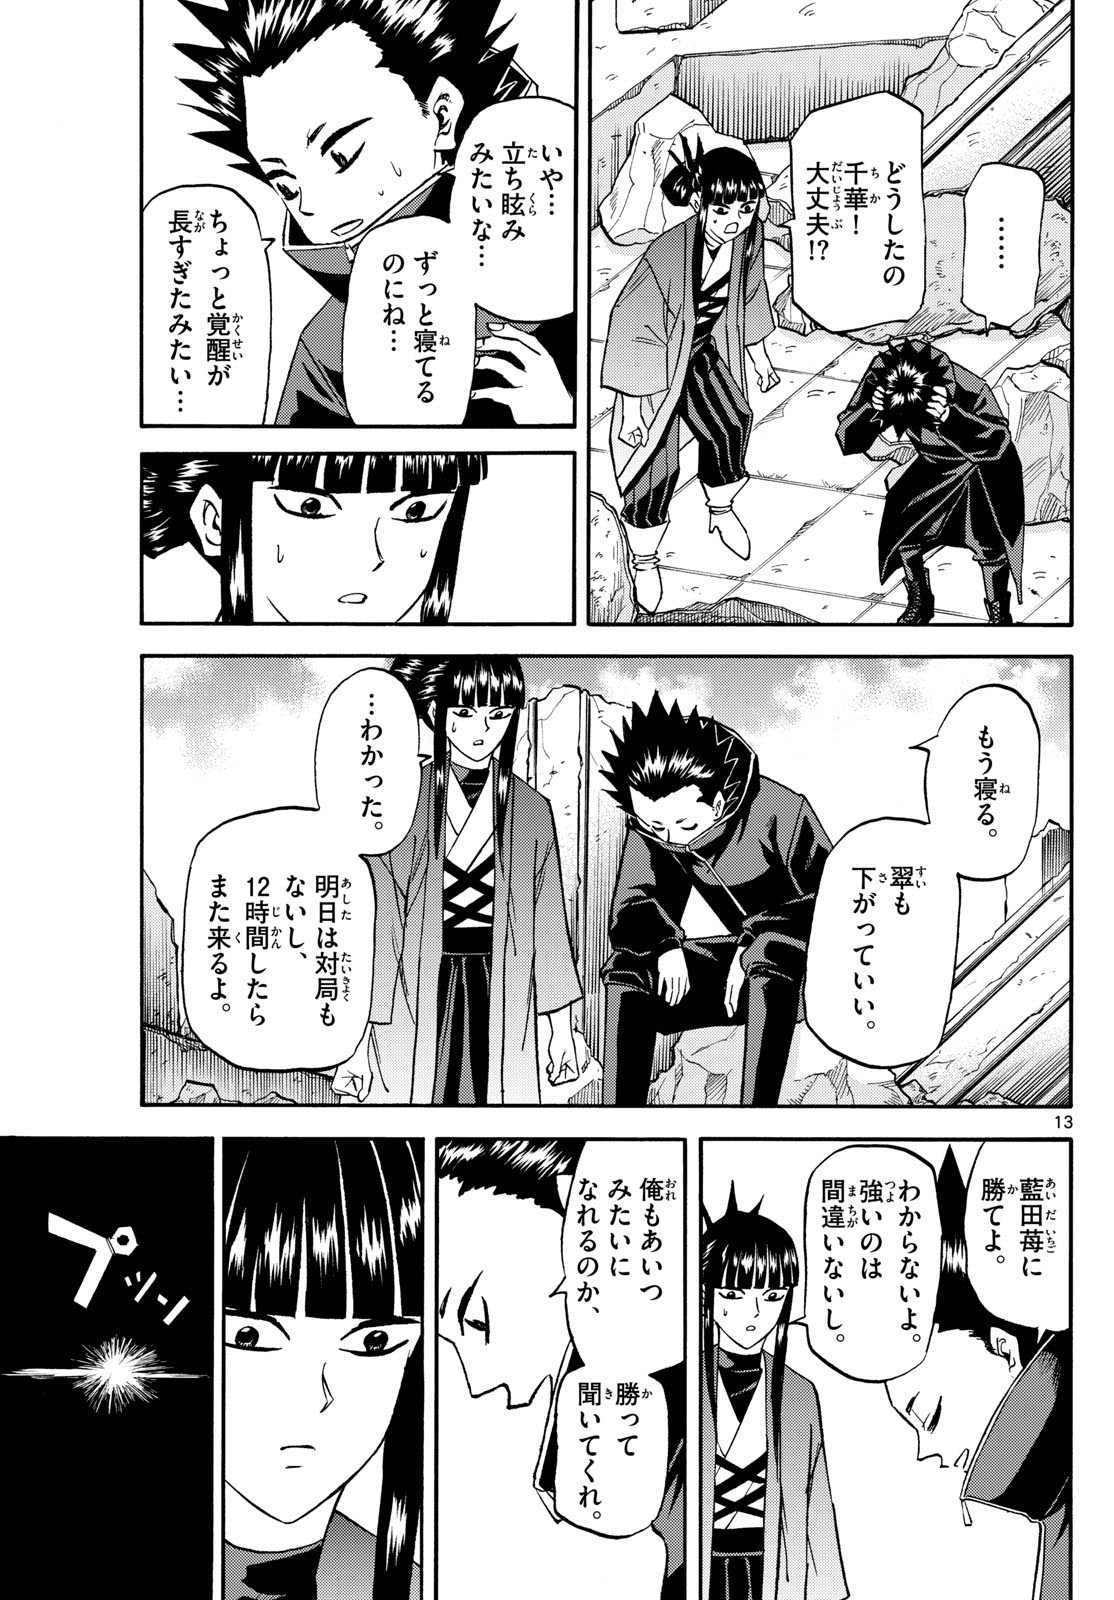 Ryu-to-Ichigo - Chapter 192 - Page 13